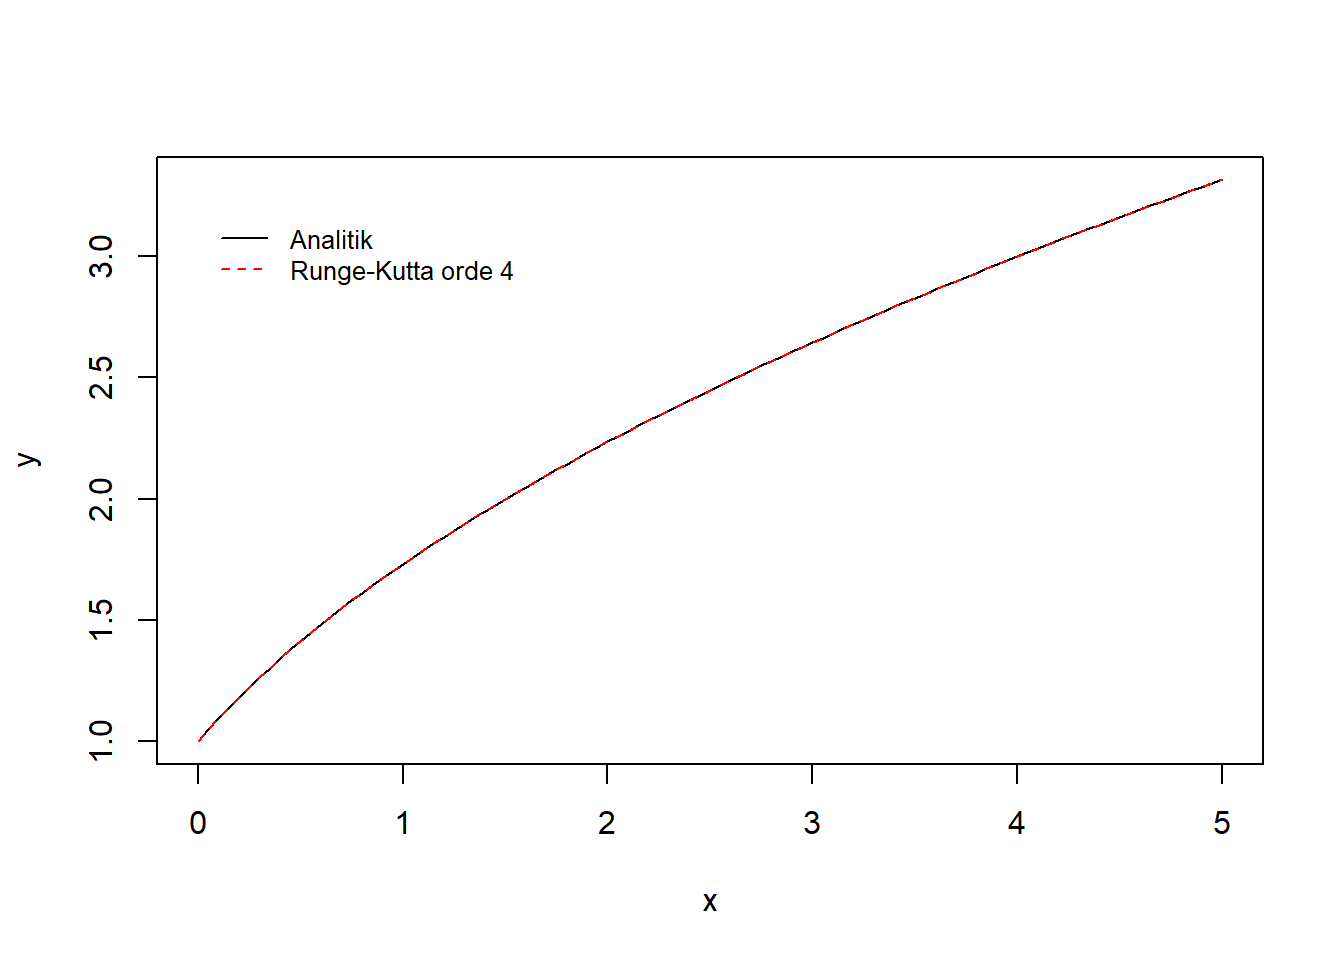 Visualisasi integrasi numerik dengan metode Runge-Kutta orde 4 dan metode analitik